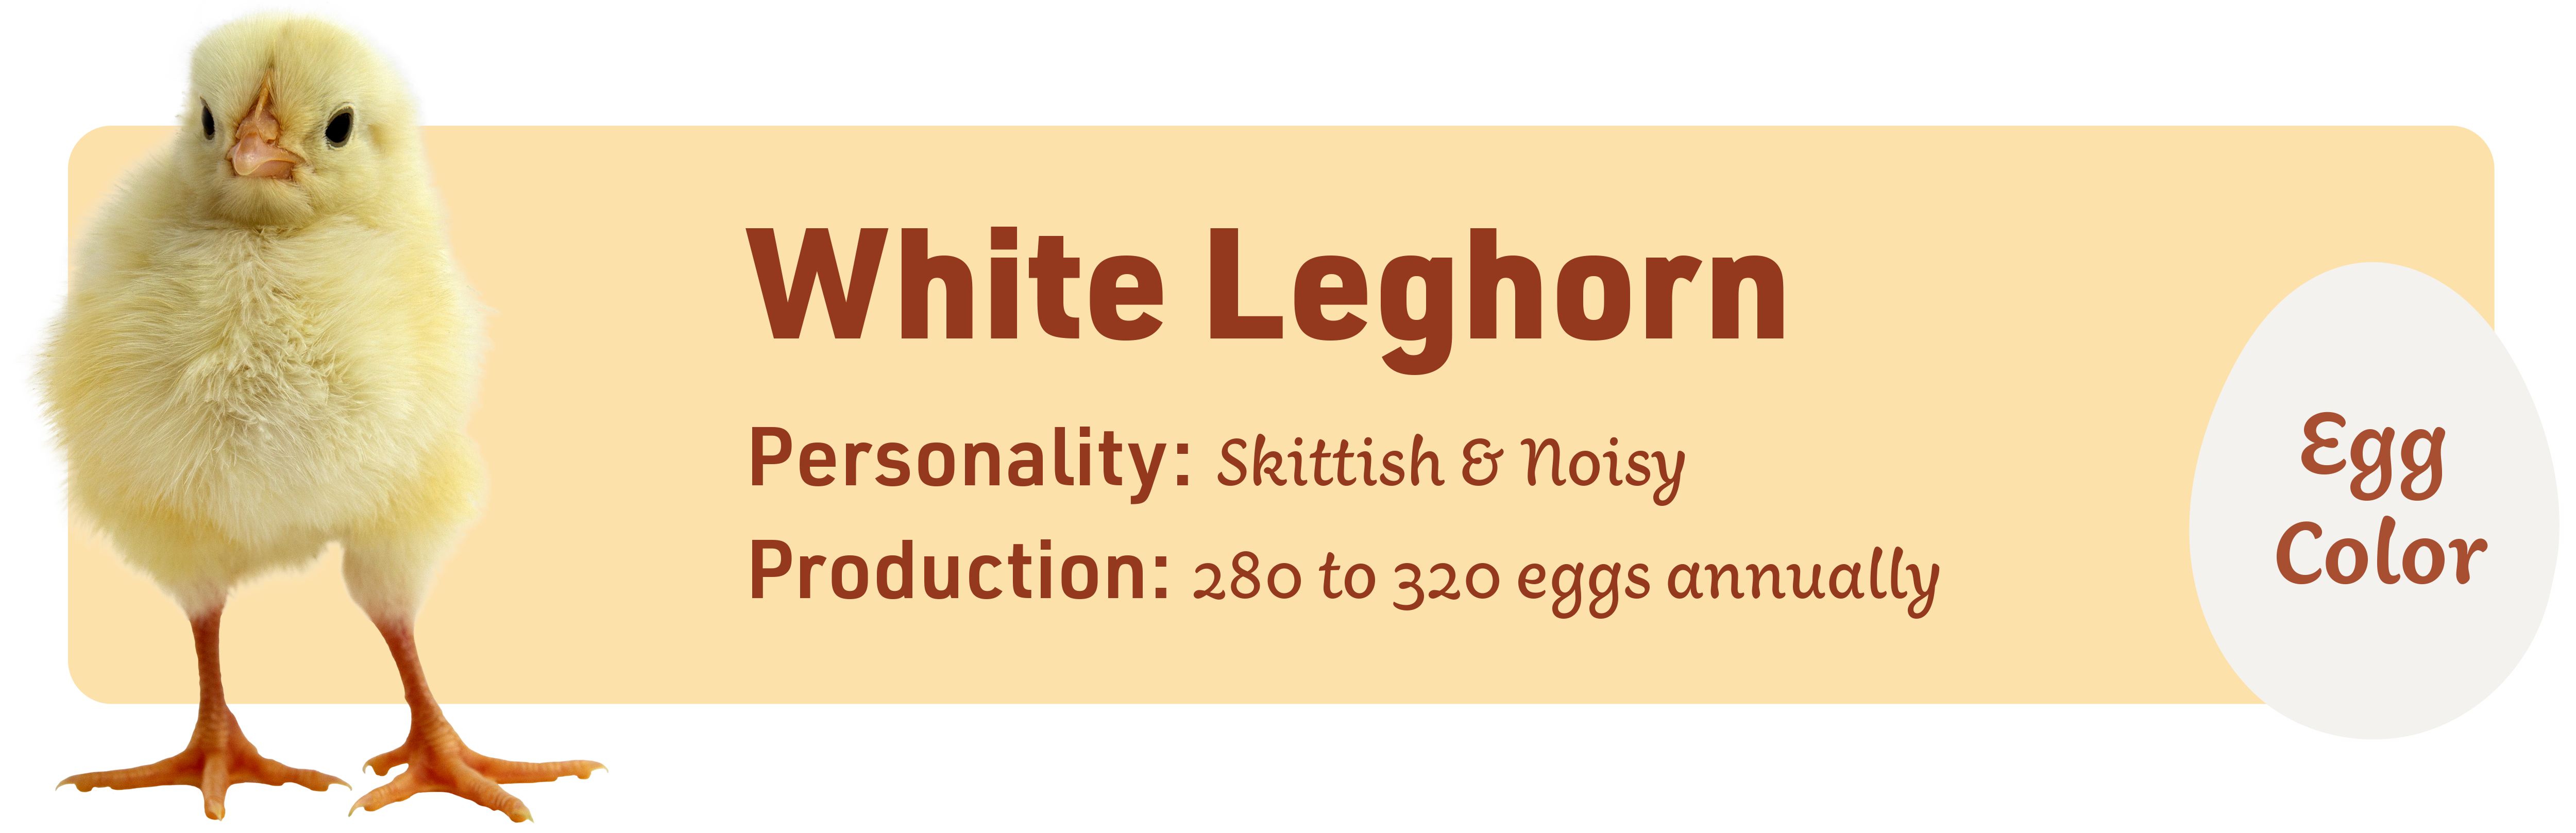 White Leghorn_Popular_chicks_v1-1